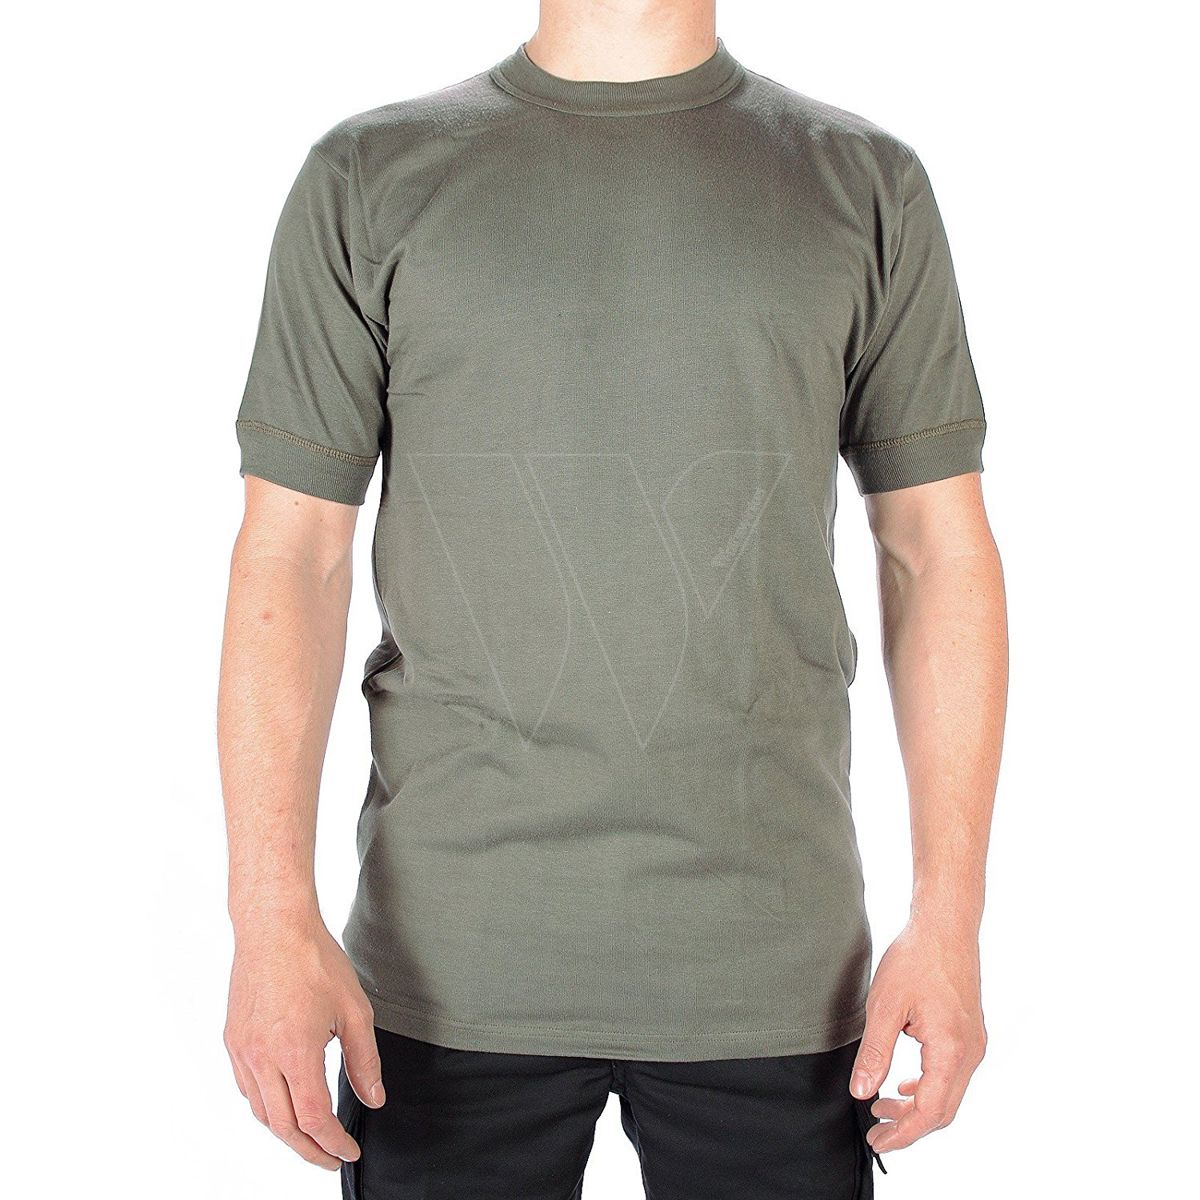 Leo köhler t-shirt olive ronde hals -xxl